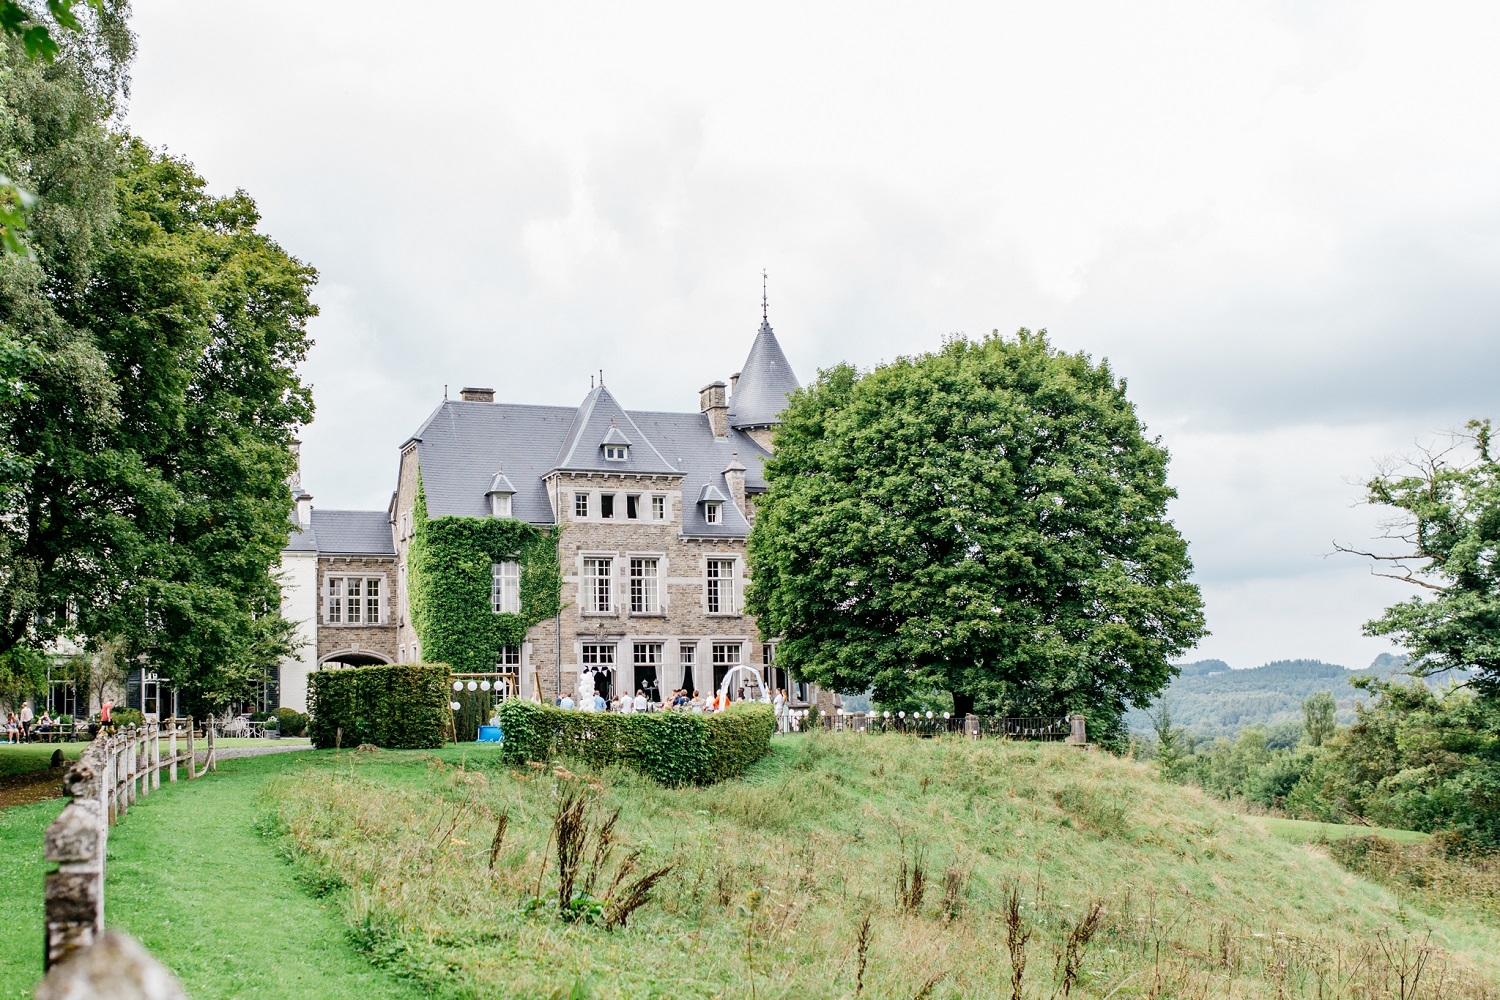 Trouwen in een kasteel in België